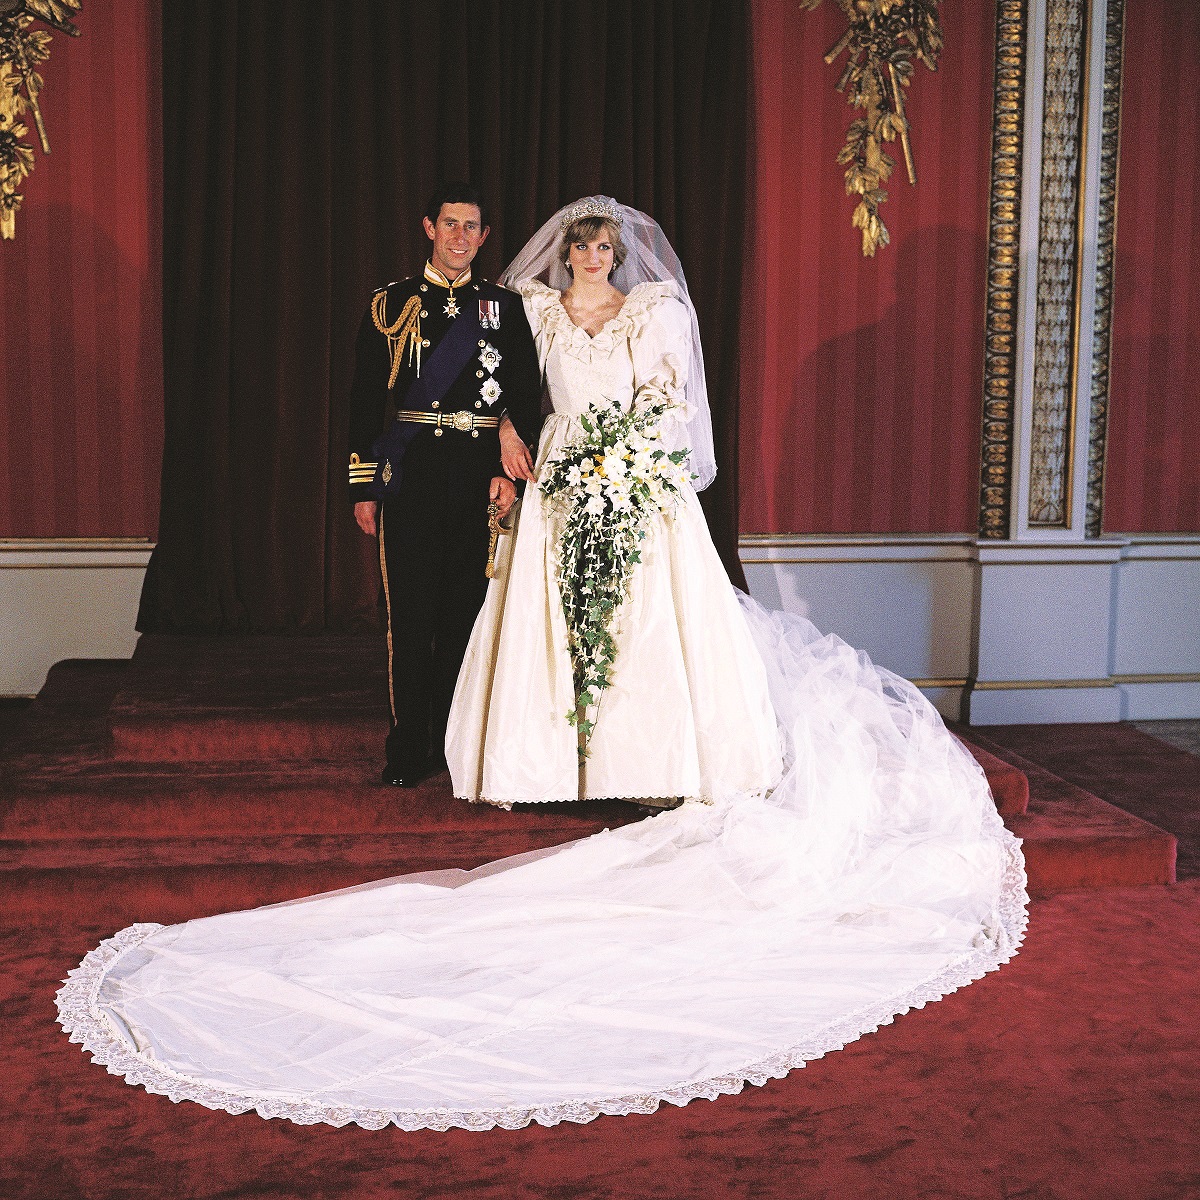 φ4 Charles and Dianas wedding 3 1